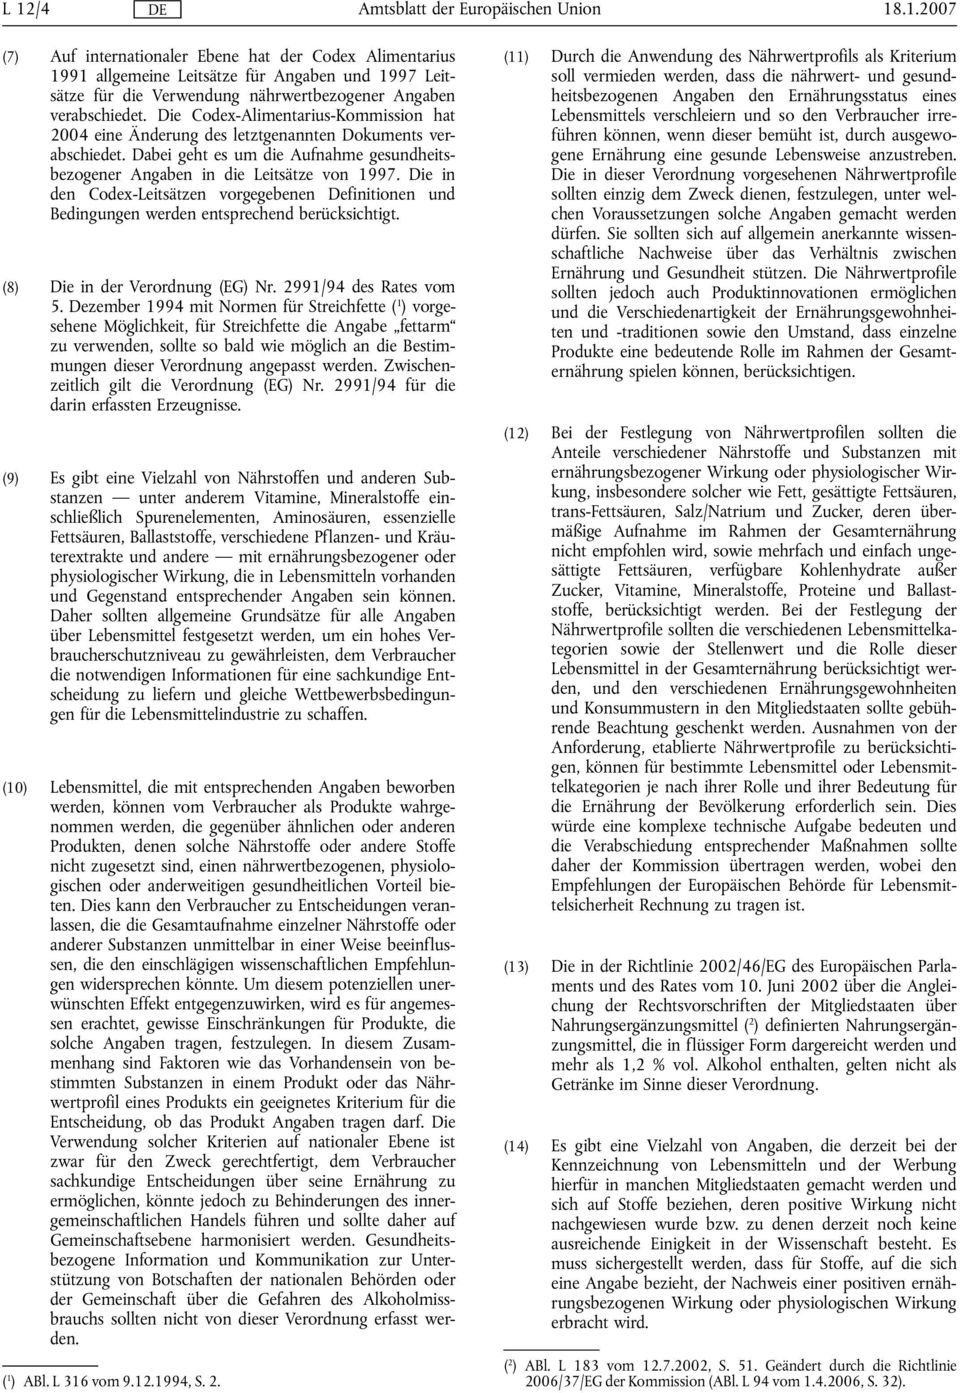 Die in den Codex-Leitsätzen vorgegebenen Definitionen und Bedingungen werden entsprechend berücksichtigt. (8) Die in der Verordnung (EG) Nr. 2991/94 des Rates vom 5.